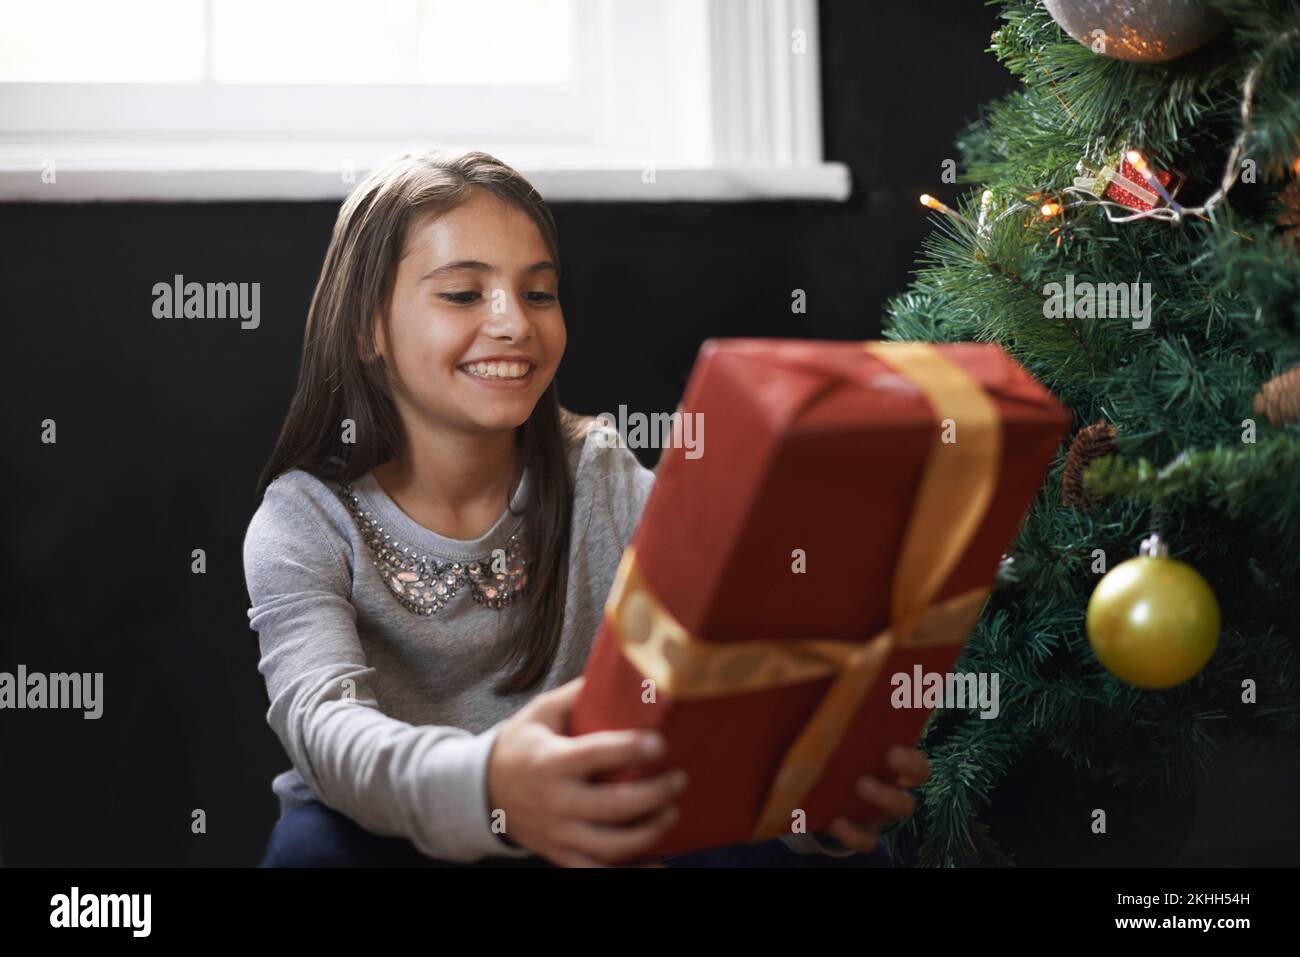 Entusiasmados con la apertura de este regalo. una niña sosteniendo un regalo de navidad. Foto de stock